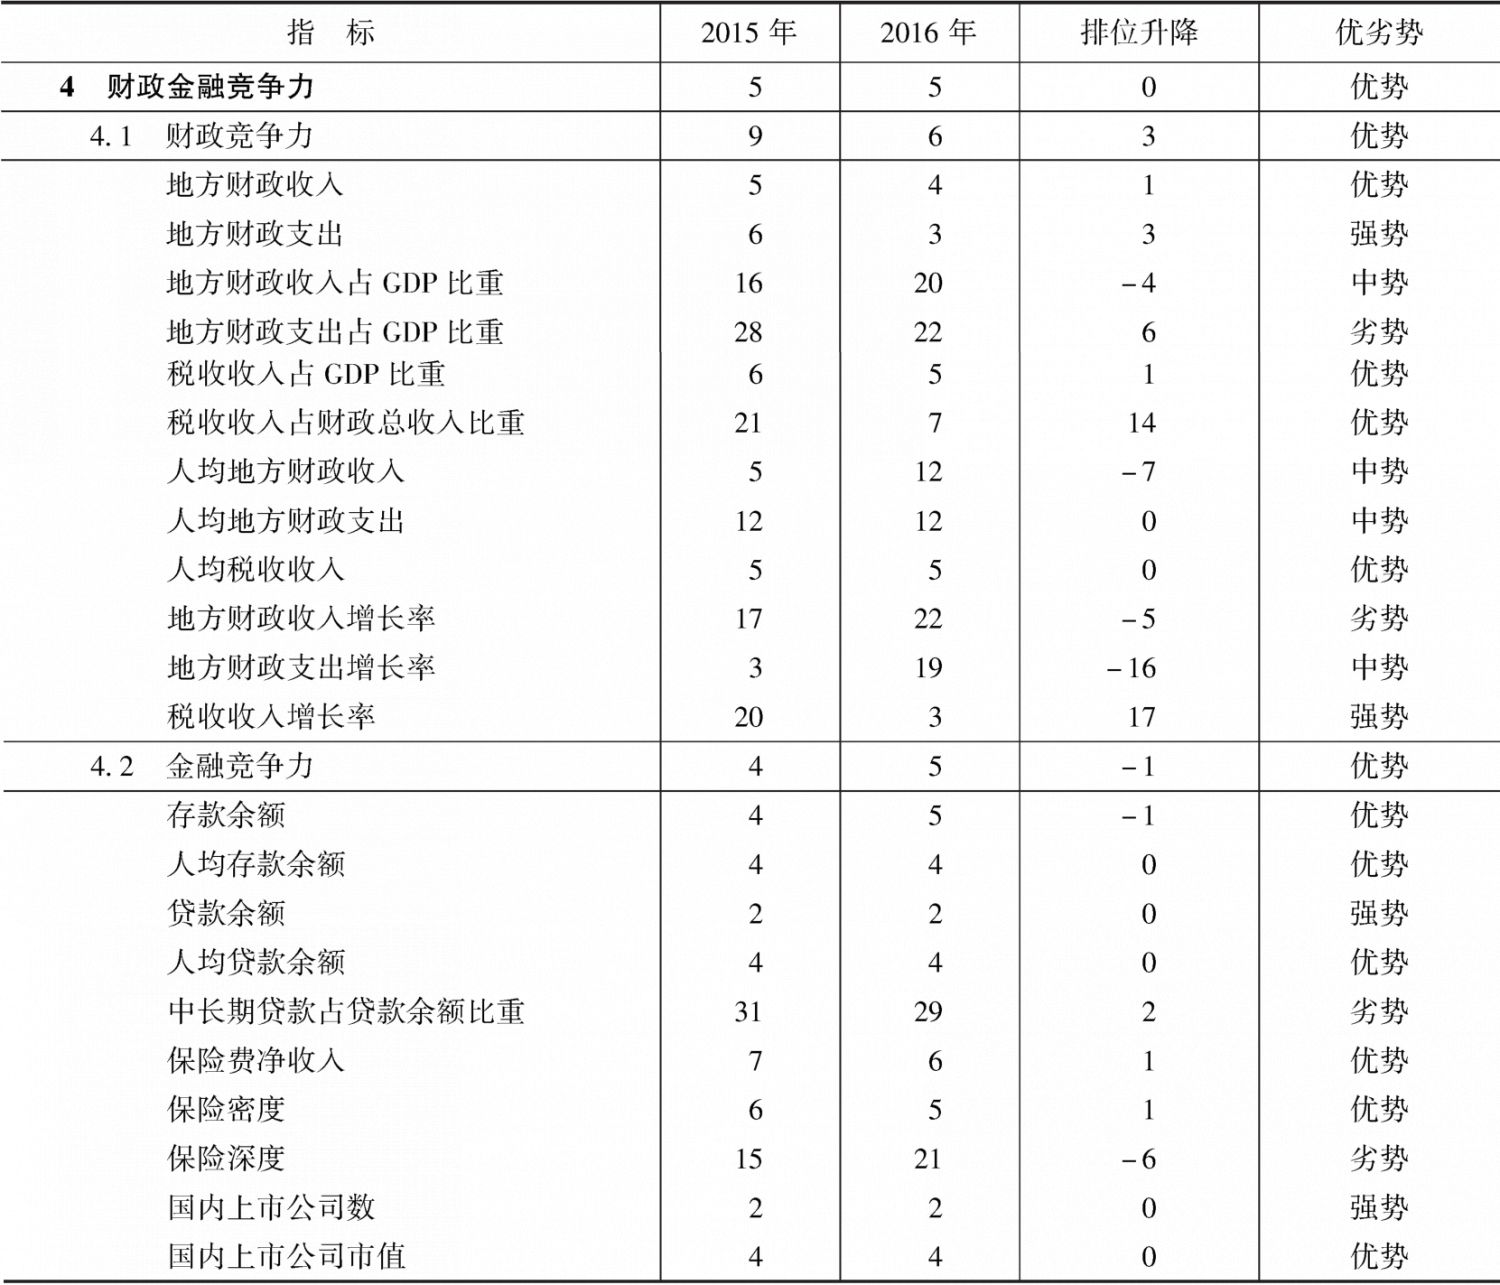 表11-8 2015～2016年浙江省财政金融竞争力指标组排位及变化趋势